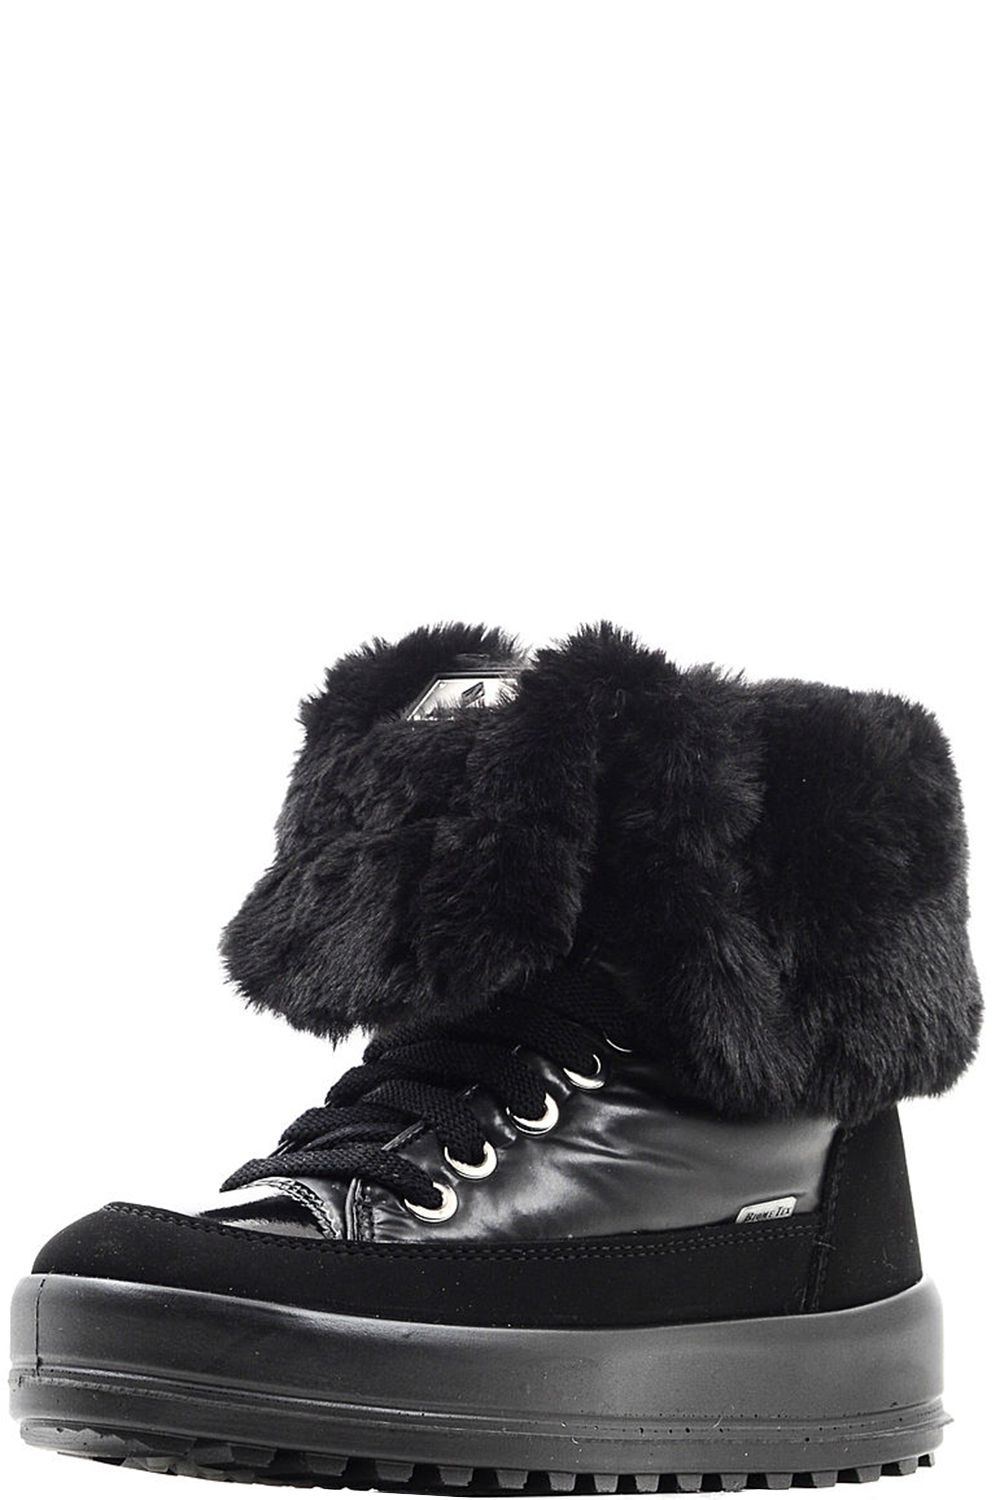 Ботинки JogDog, размер 36, цвет черный 30207R - фото 1